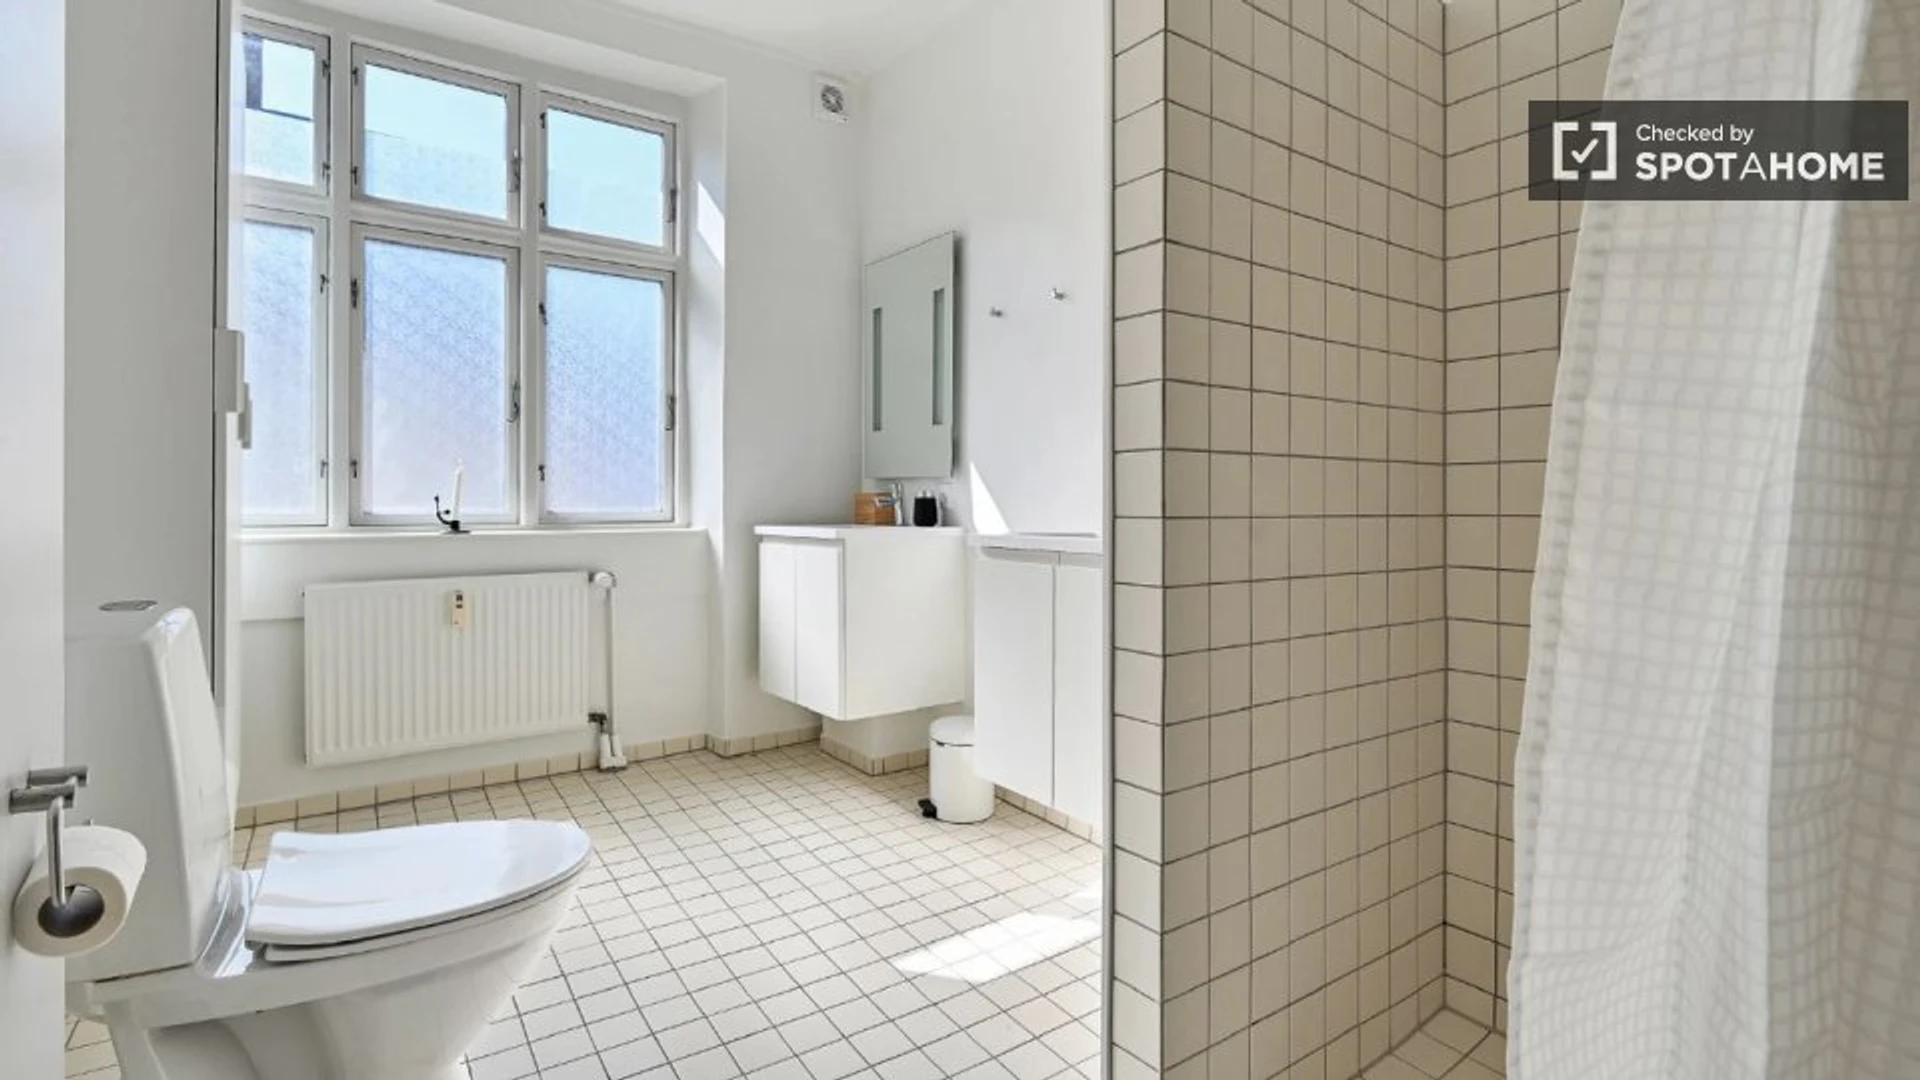 Cheap private room in Copenhagen